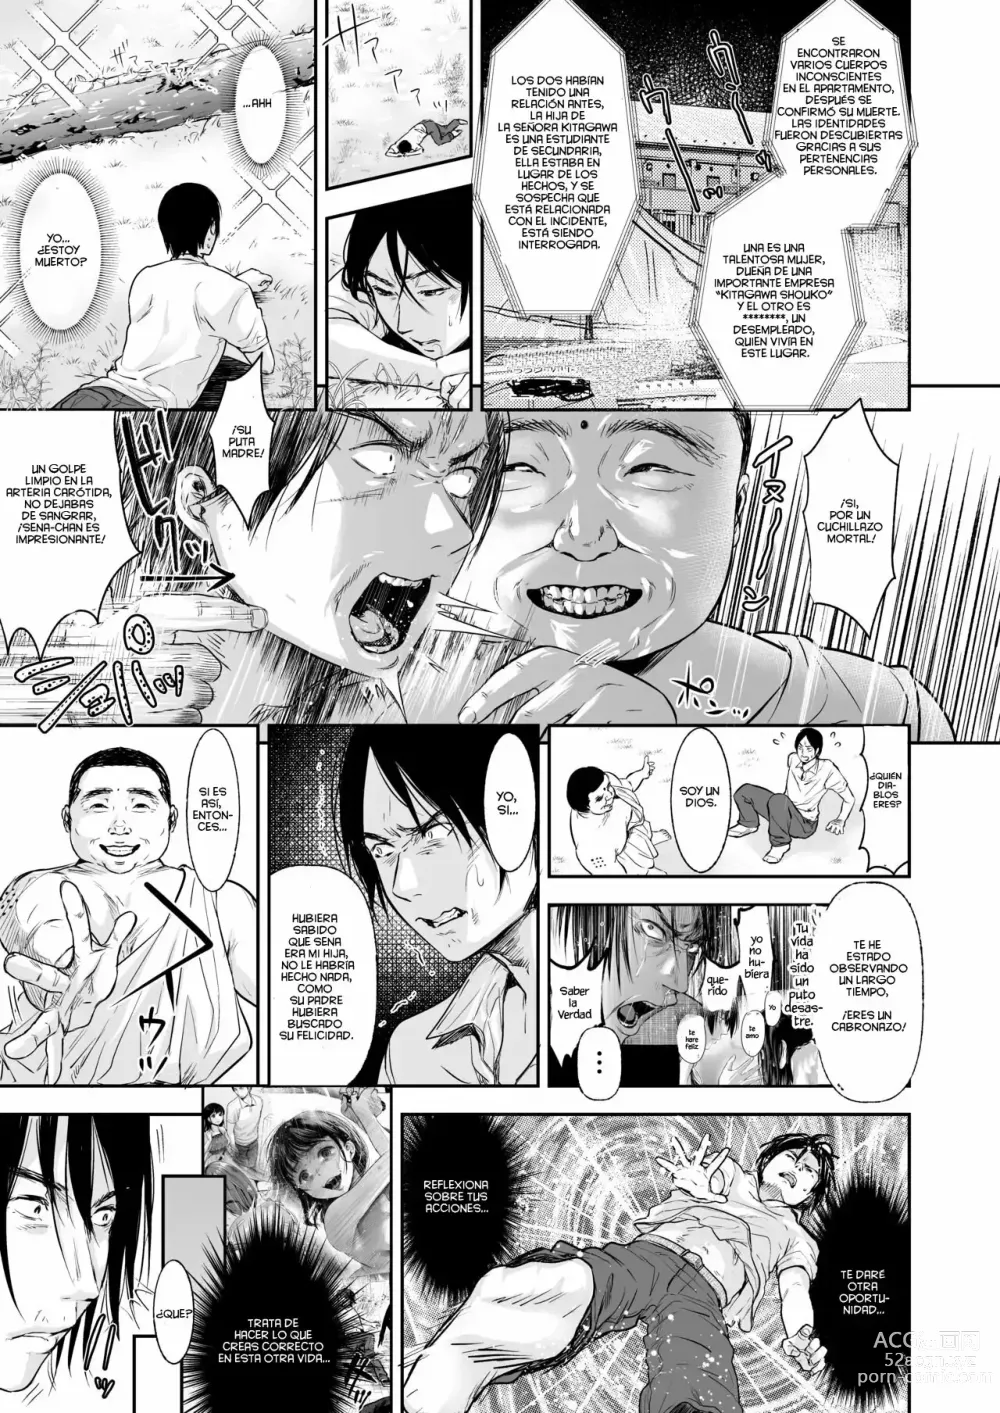 Page 85 of manga TABOO (Yarisugi Shoujo no Kowashikata.) Ch. 1-3 + What If...?